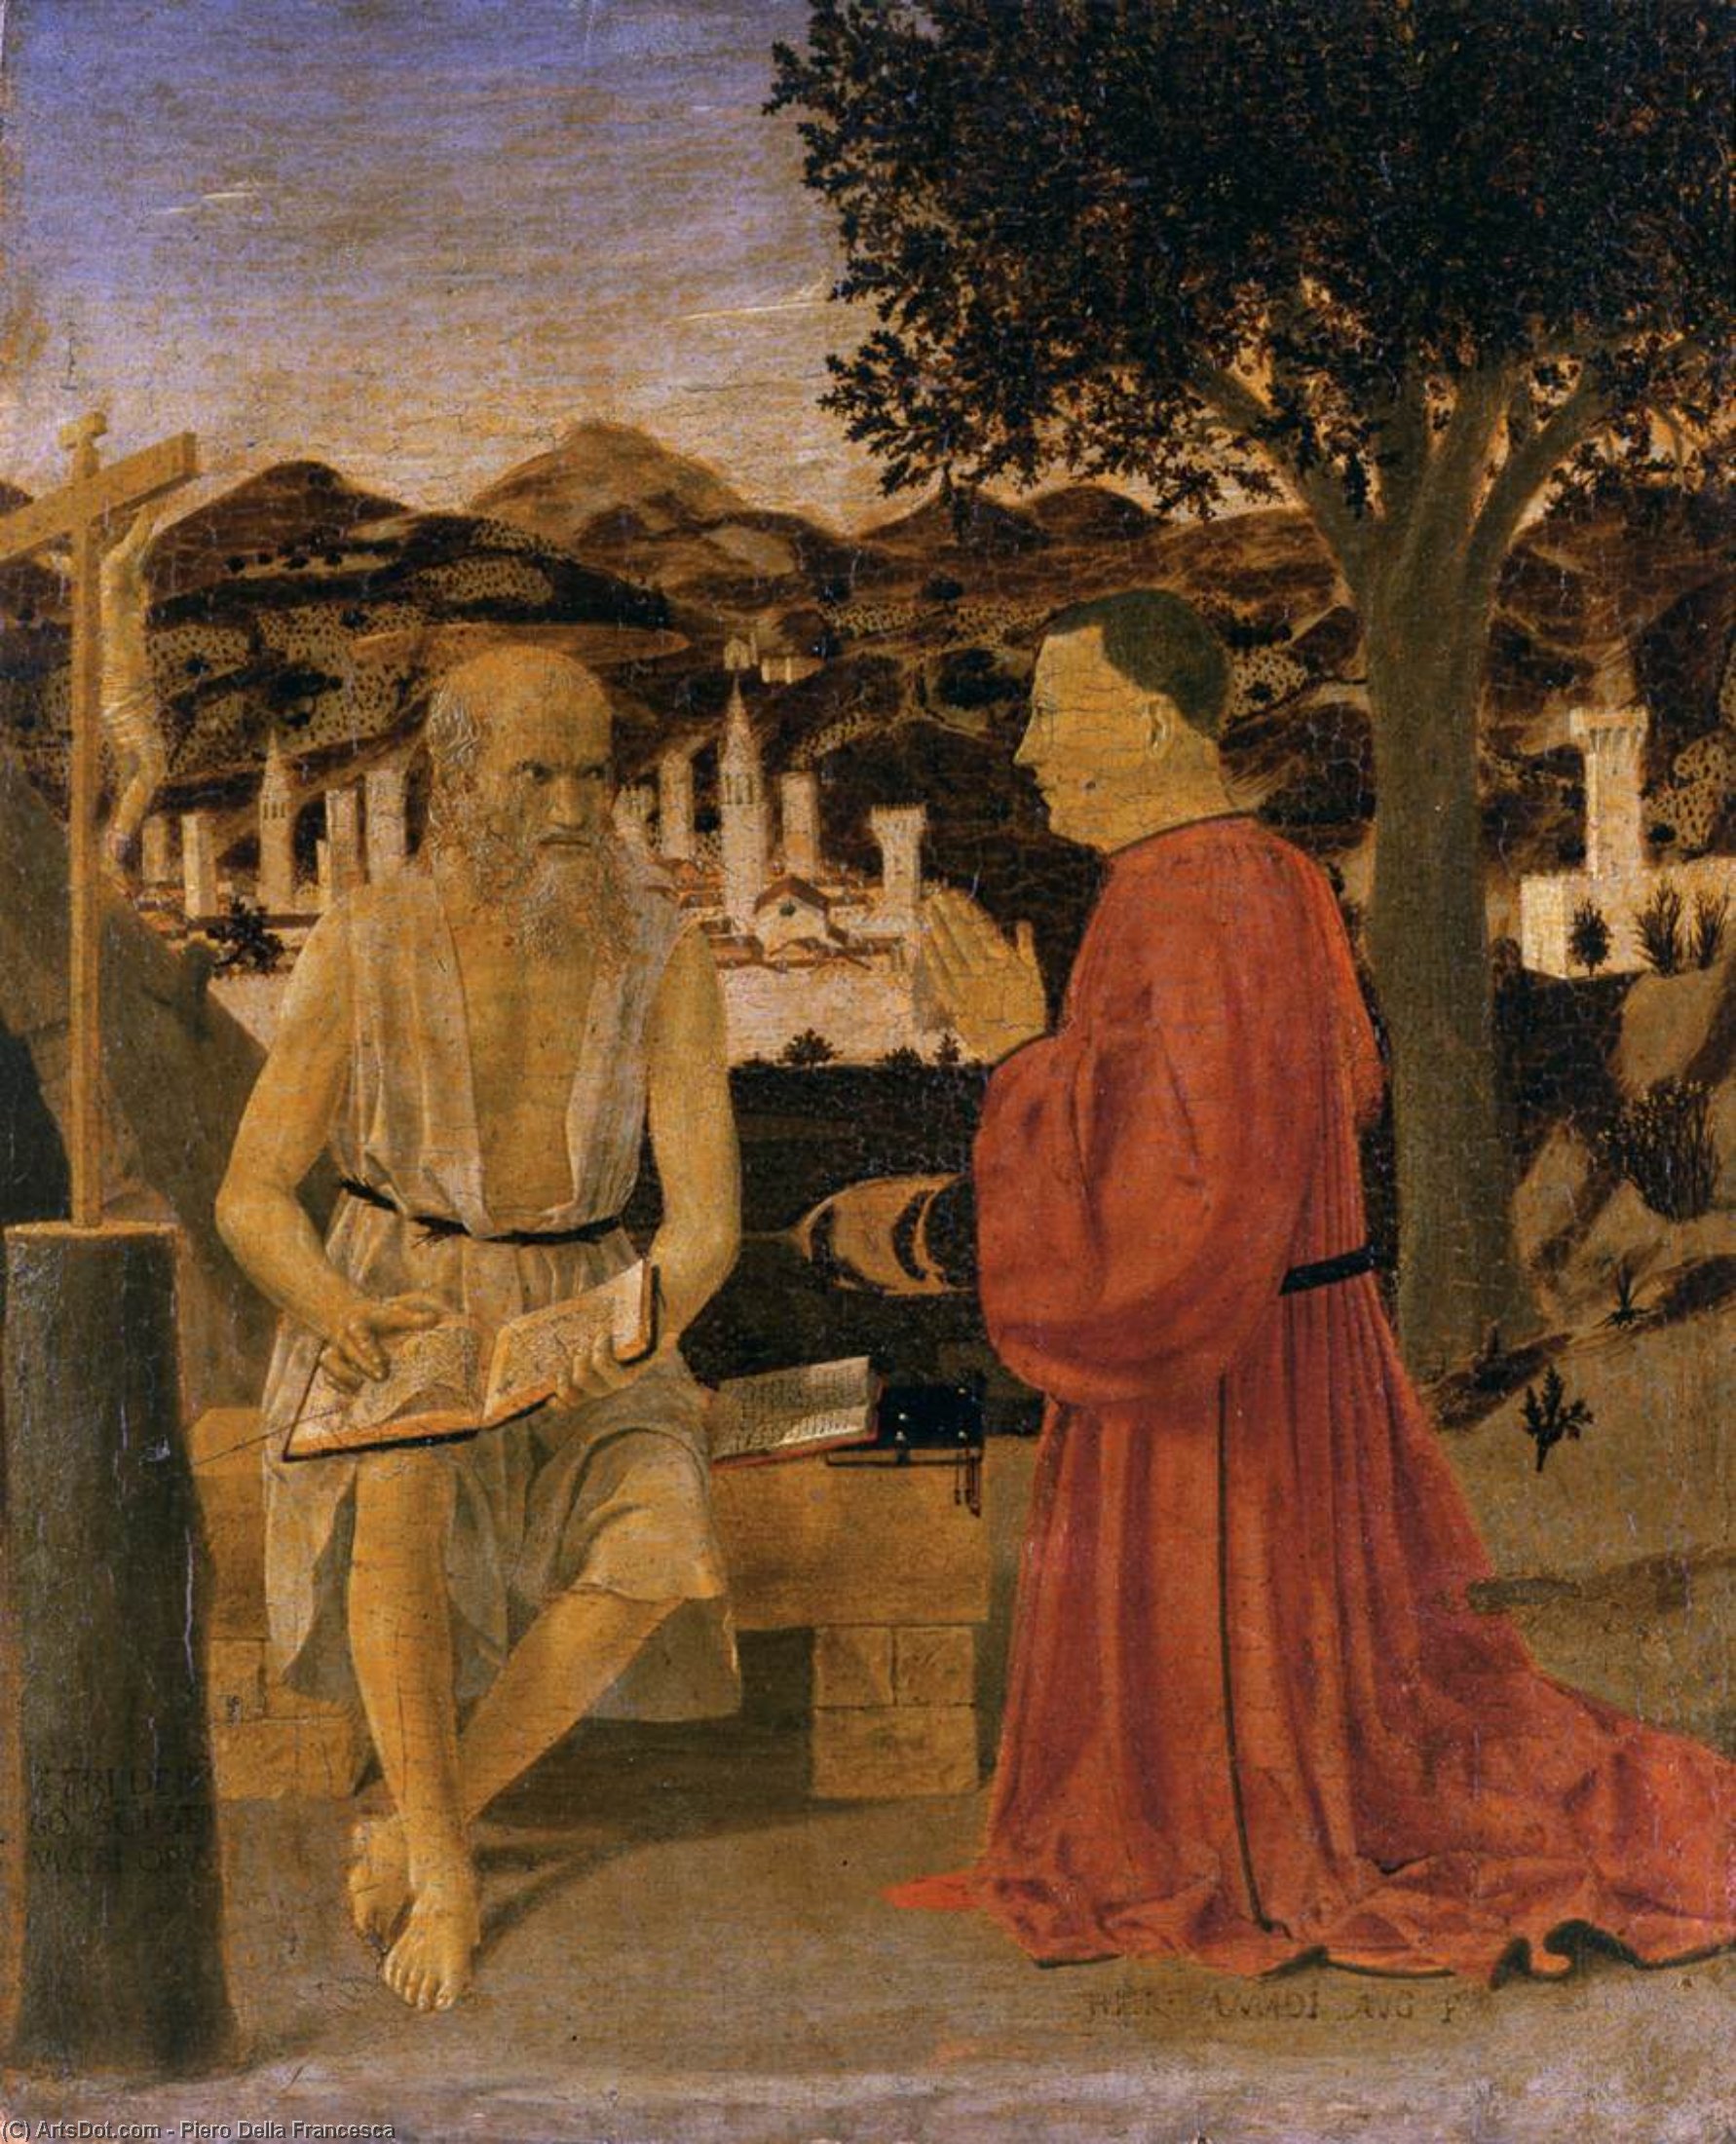 WikiOO.org - Encyclopedia of Fine Arts - Maleri, Artwork Piero Della Francesca - St Jerome and a Donor